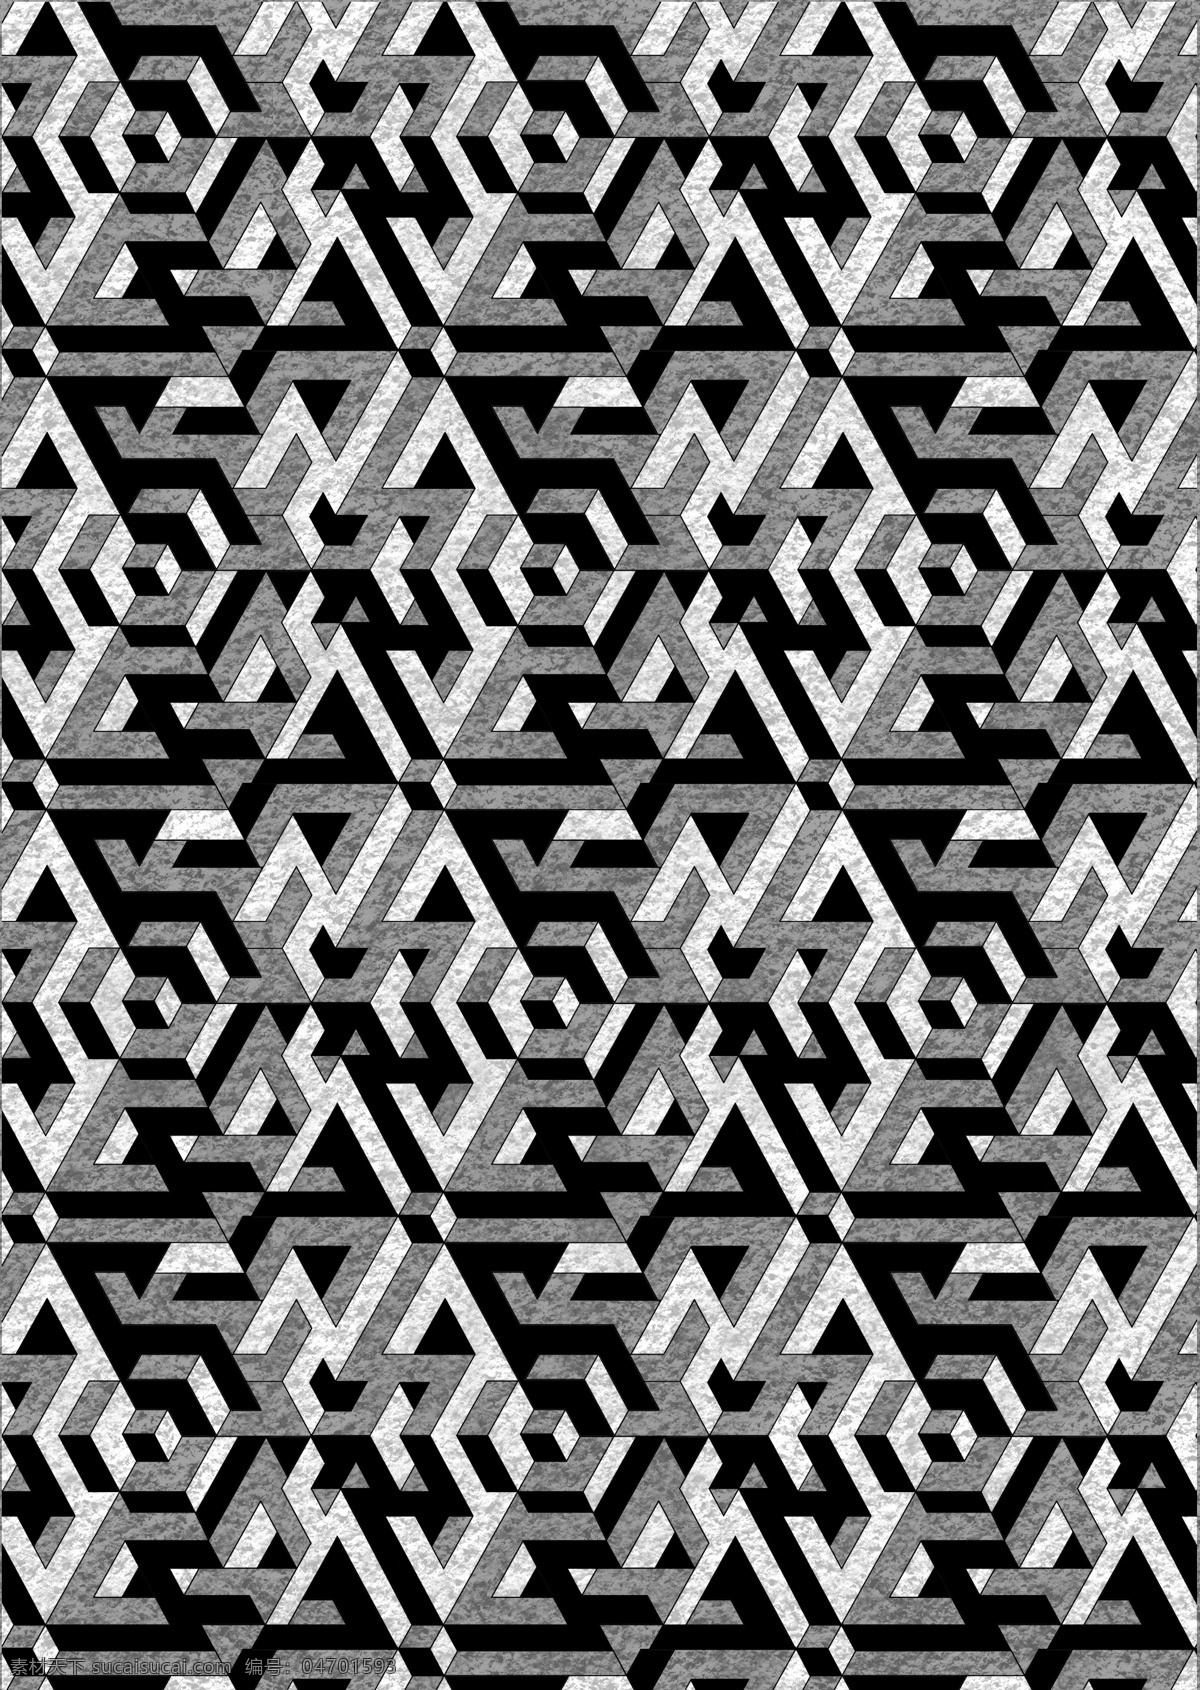 立体迷宫 迷宫 立体 四方连续 矛盾空间 黑白 几何 分层